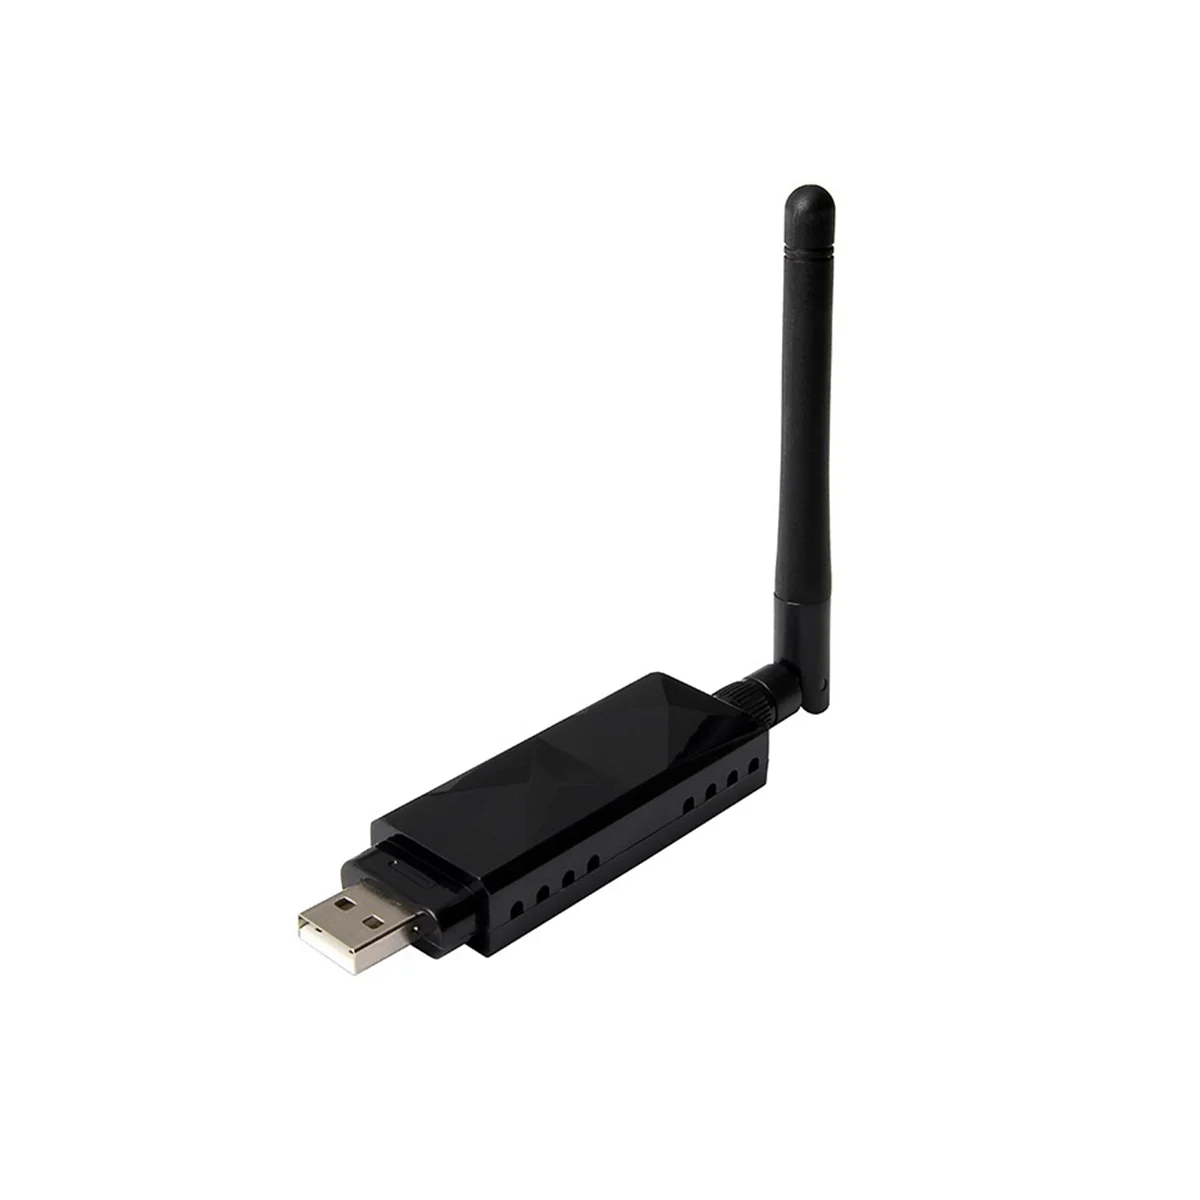 

Чипсет AR9271, 150 Мбит/с, беспроводной USB Wi-Fi адаптер 802.11N, сетевая карта с 2DBi антенной для Windows/8/10/Kali Linux